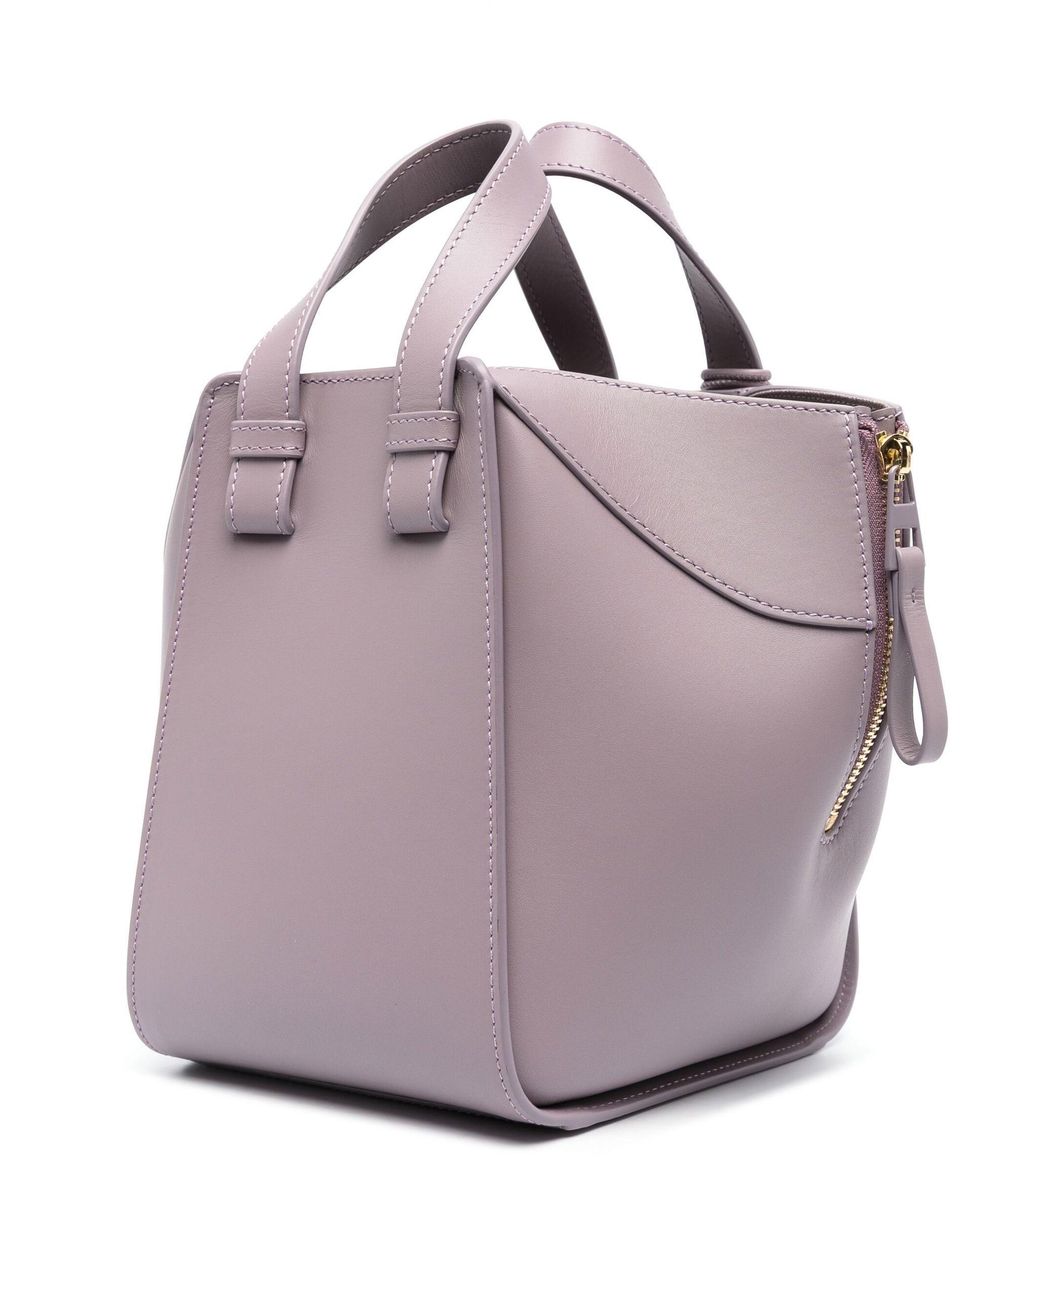 Loewe Hammock Compact Leather Tote Bag in Purple | Lyst